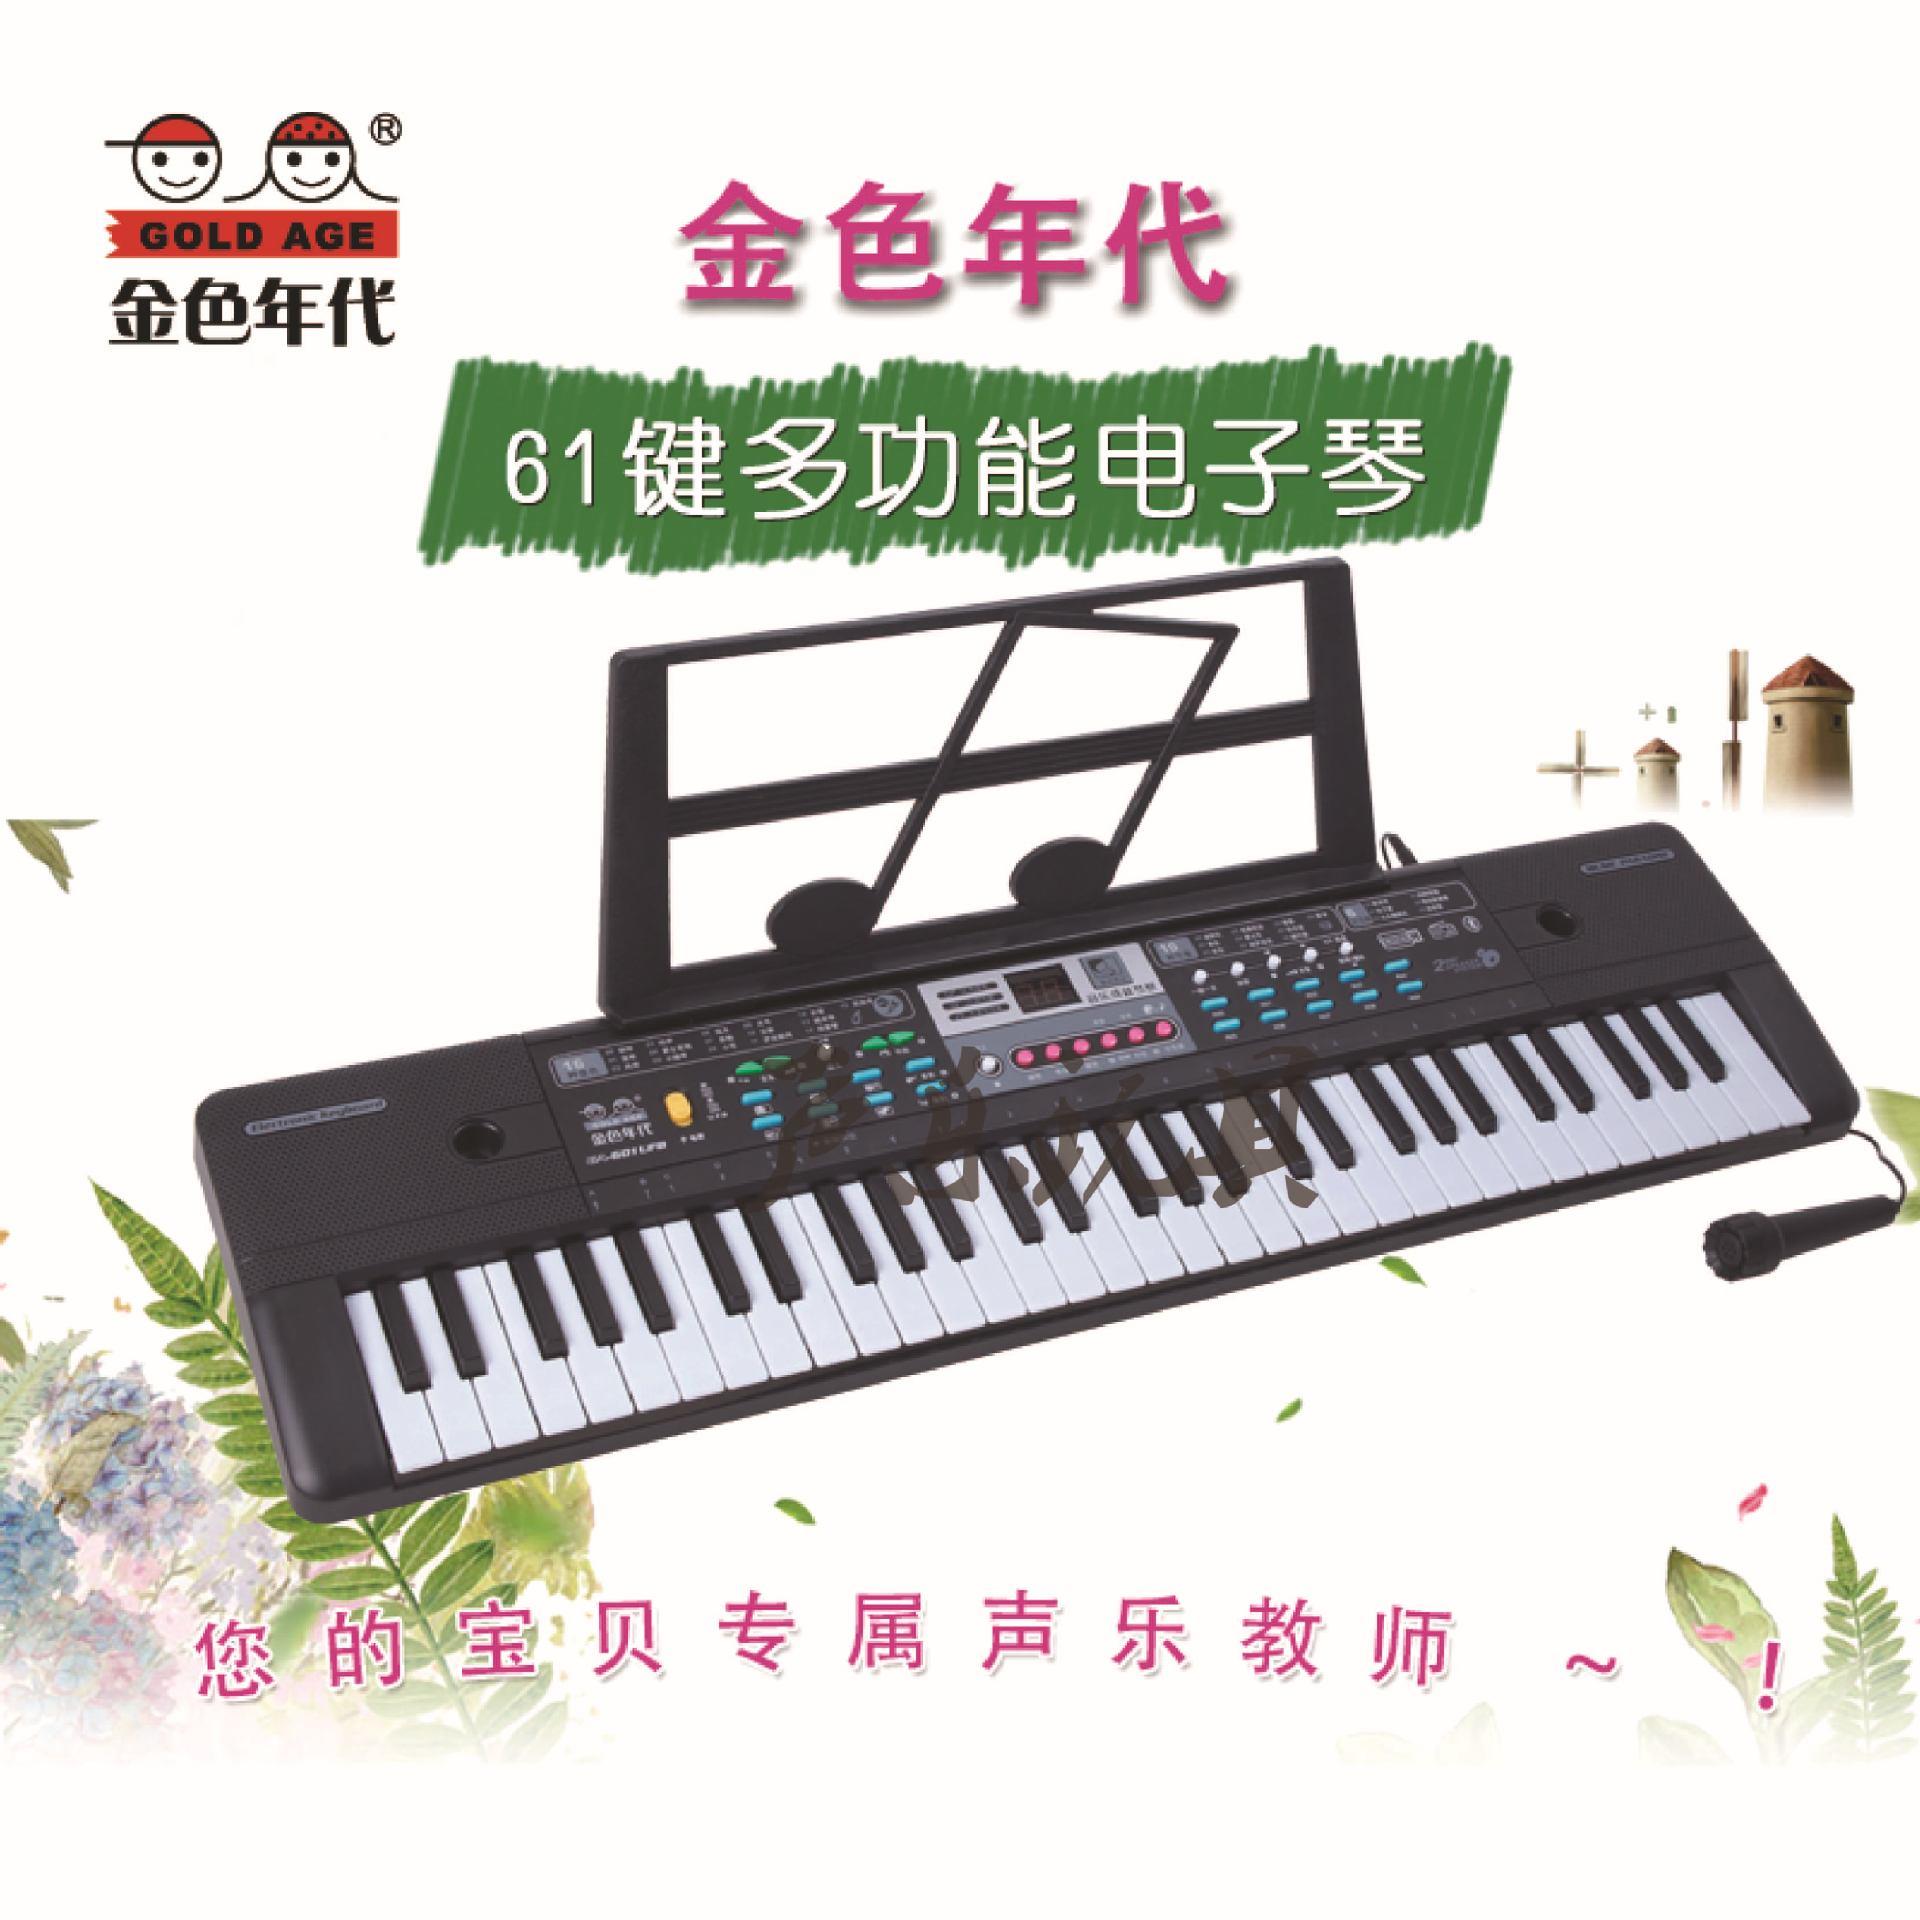 多功能电子琴61键带话筒 益智早教儿童音乐玩具电子琴厂家直销